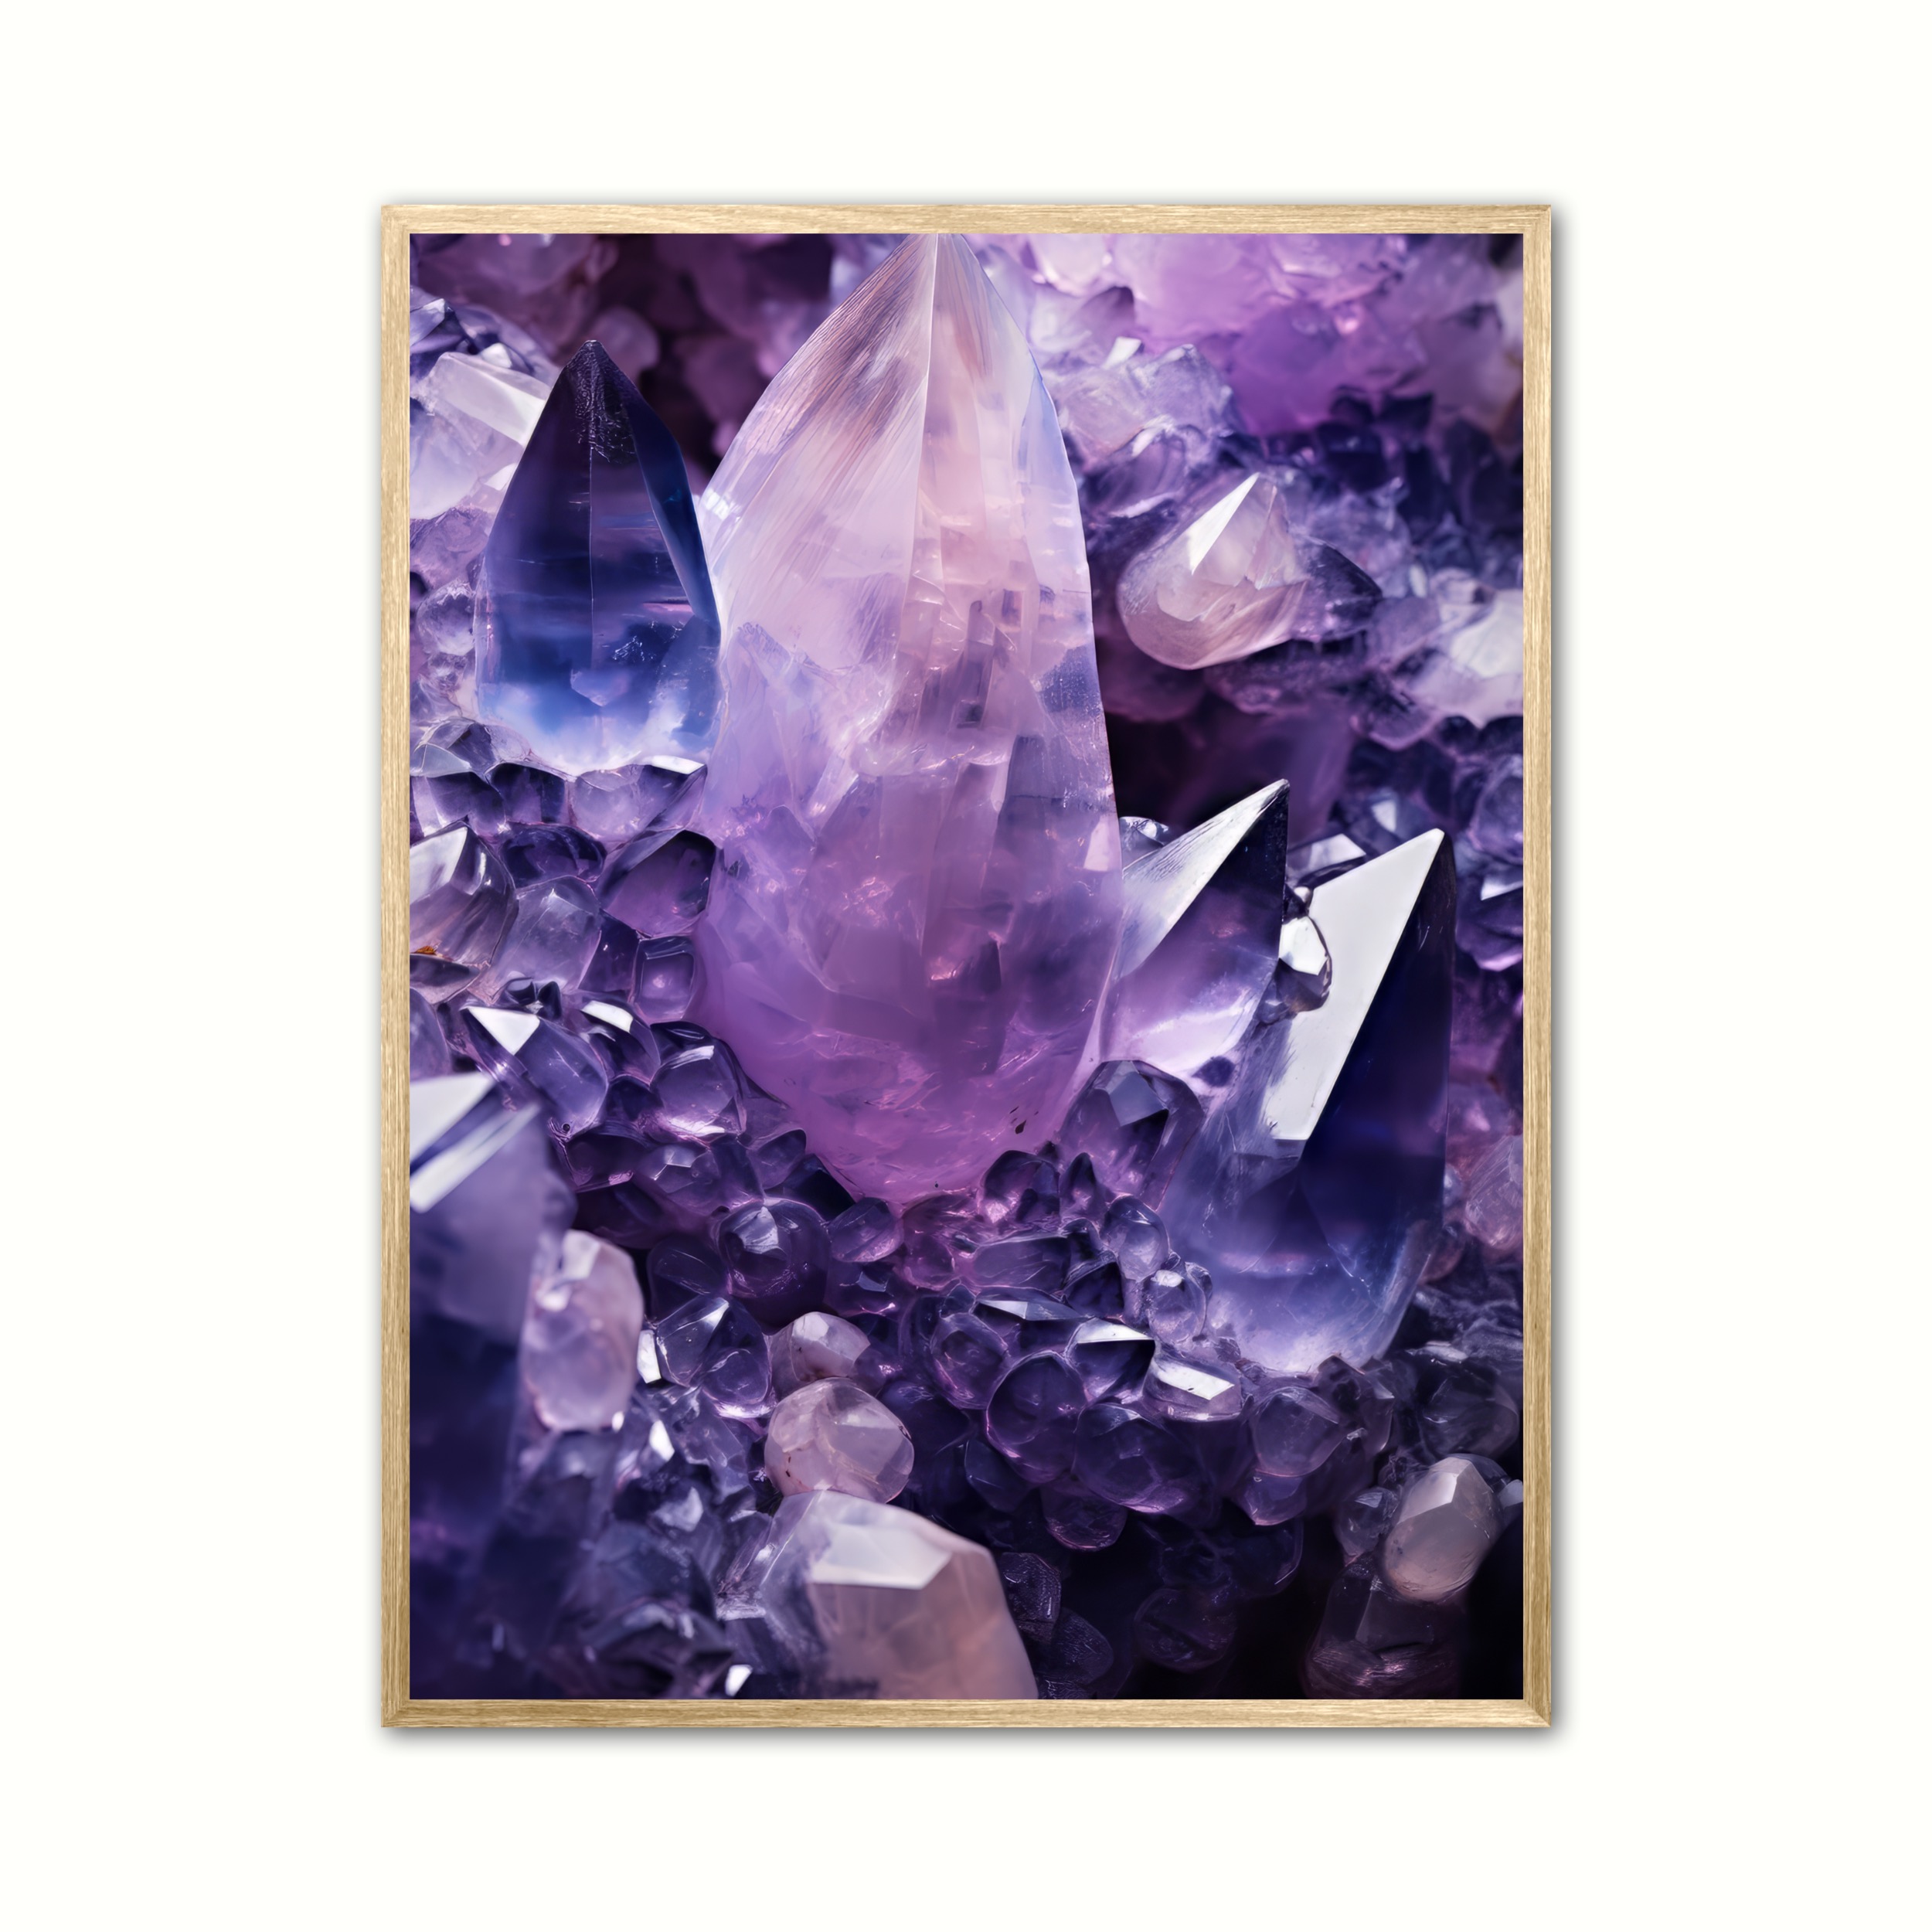 Plakat med Ametyst Nr. 4 - Krystaller 21 x 29,7 cm (A4)